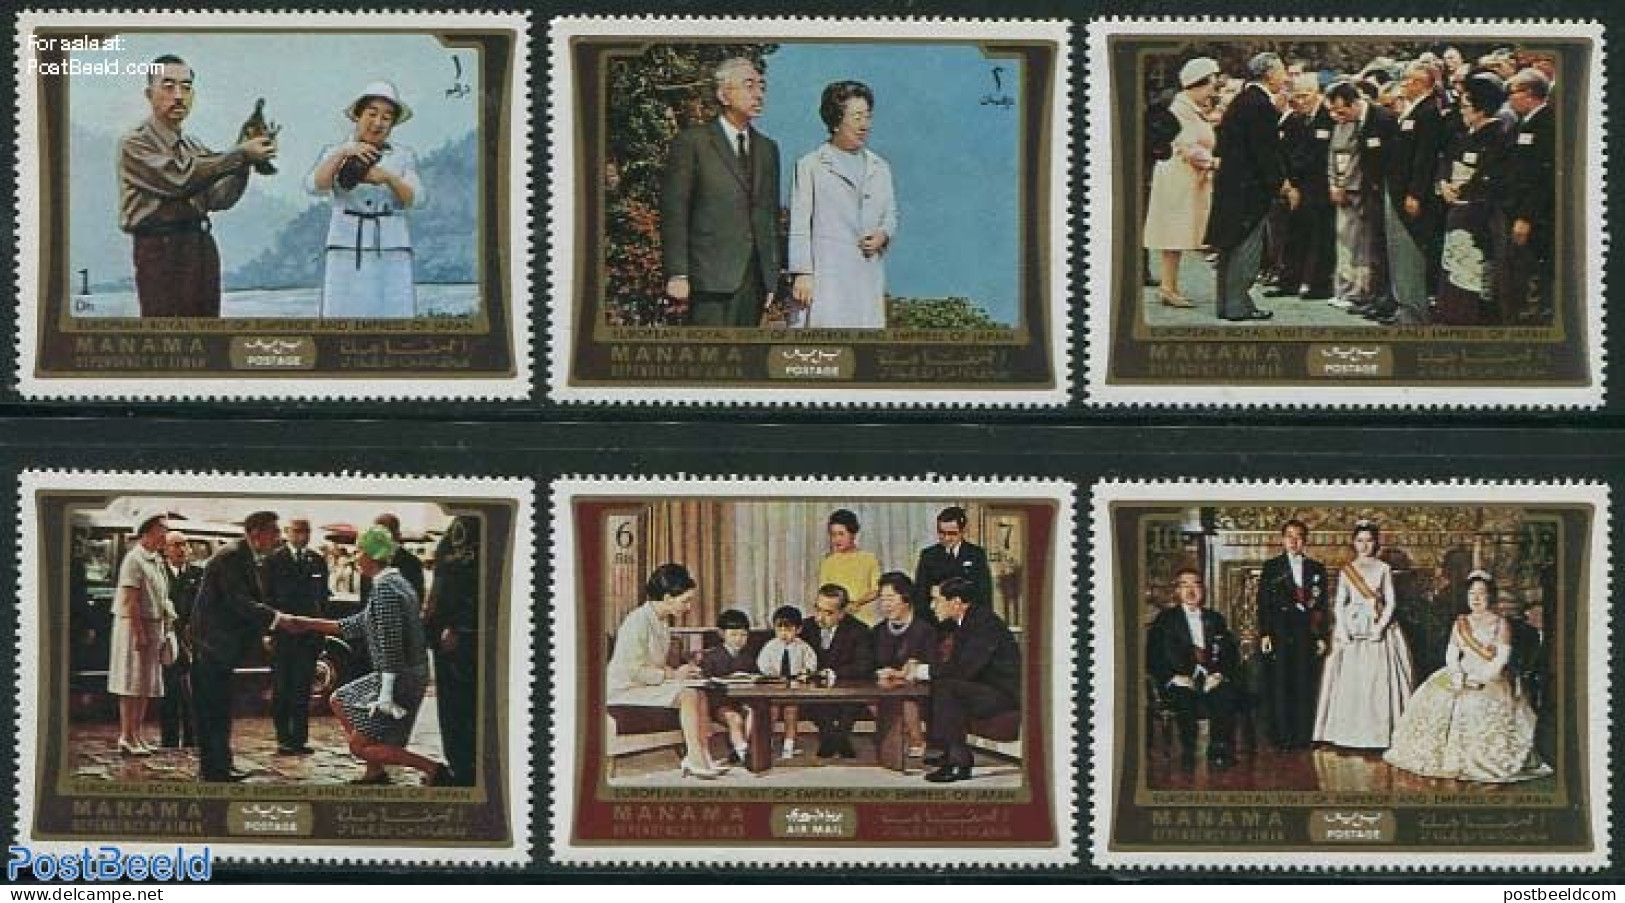 Manama 1971 Hirohito Europa Visit 6v, Mint NH, History - Kings & Queens (Royalty) - Koniklijke Families